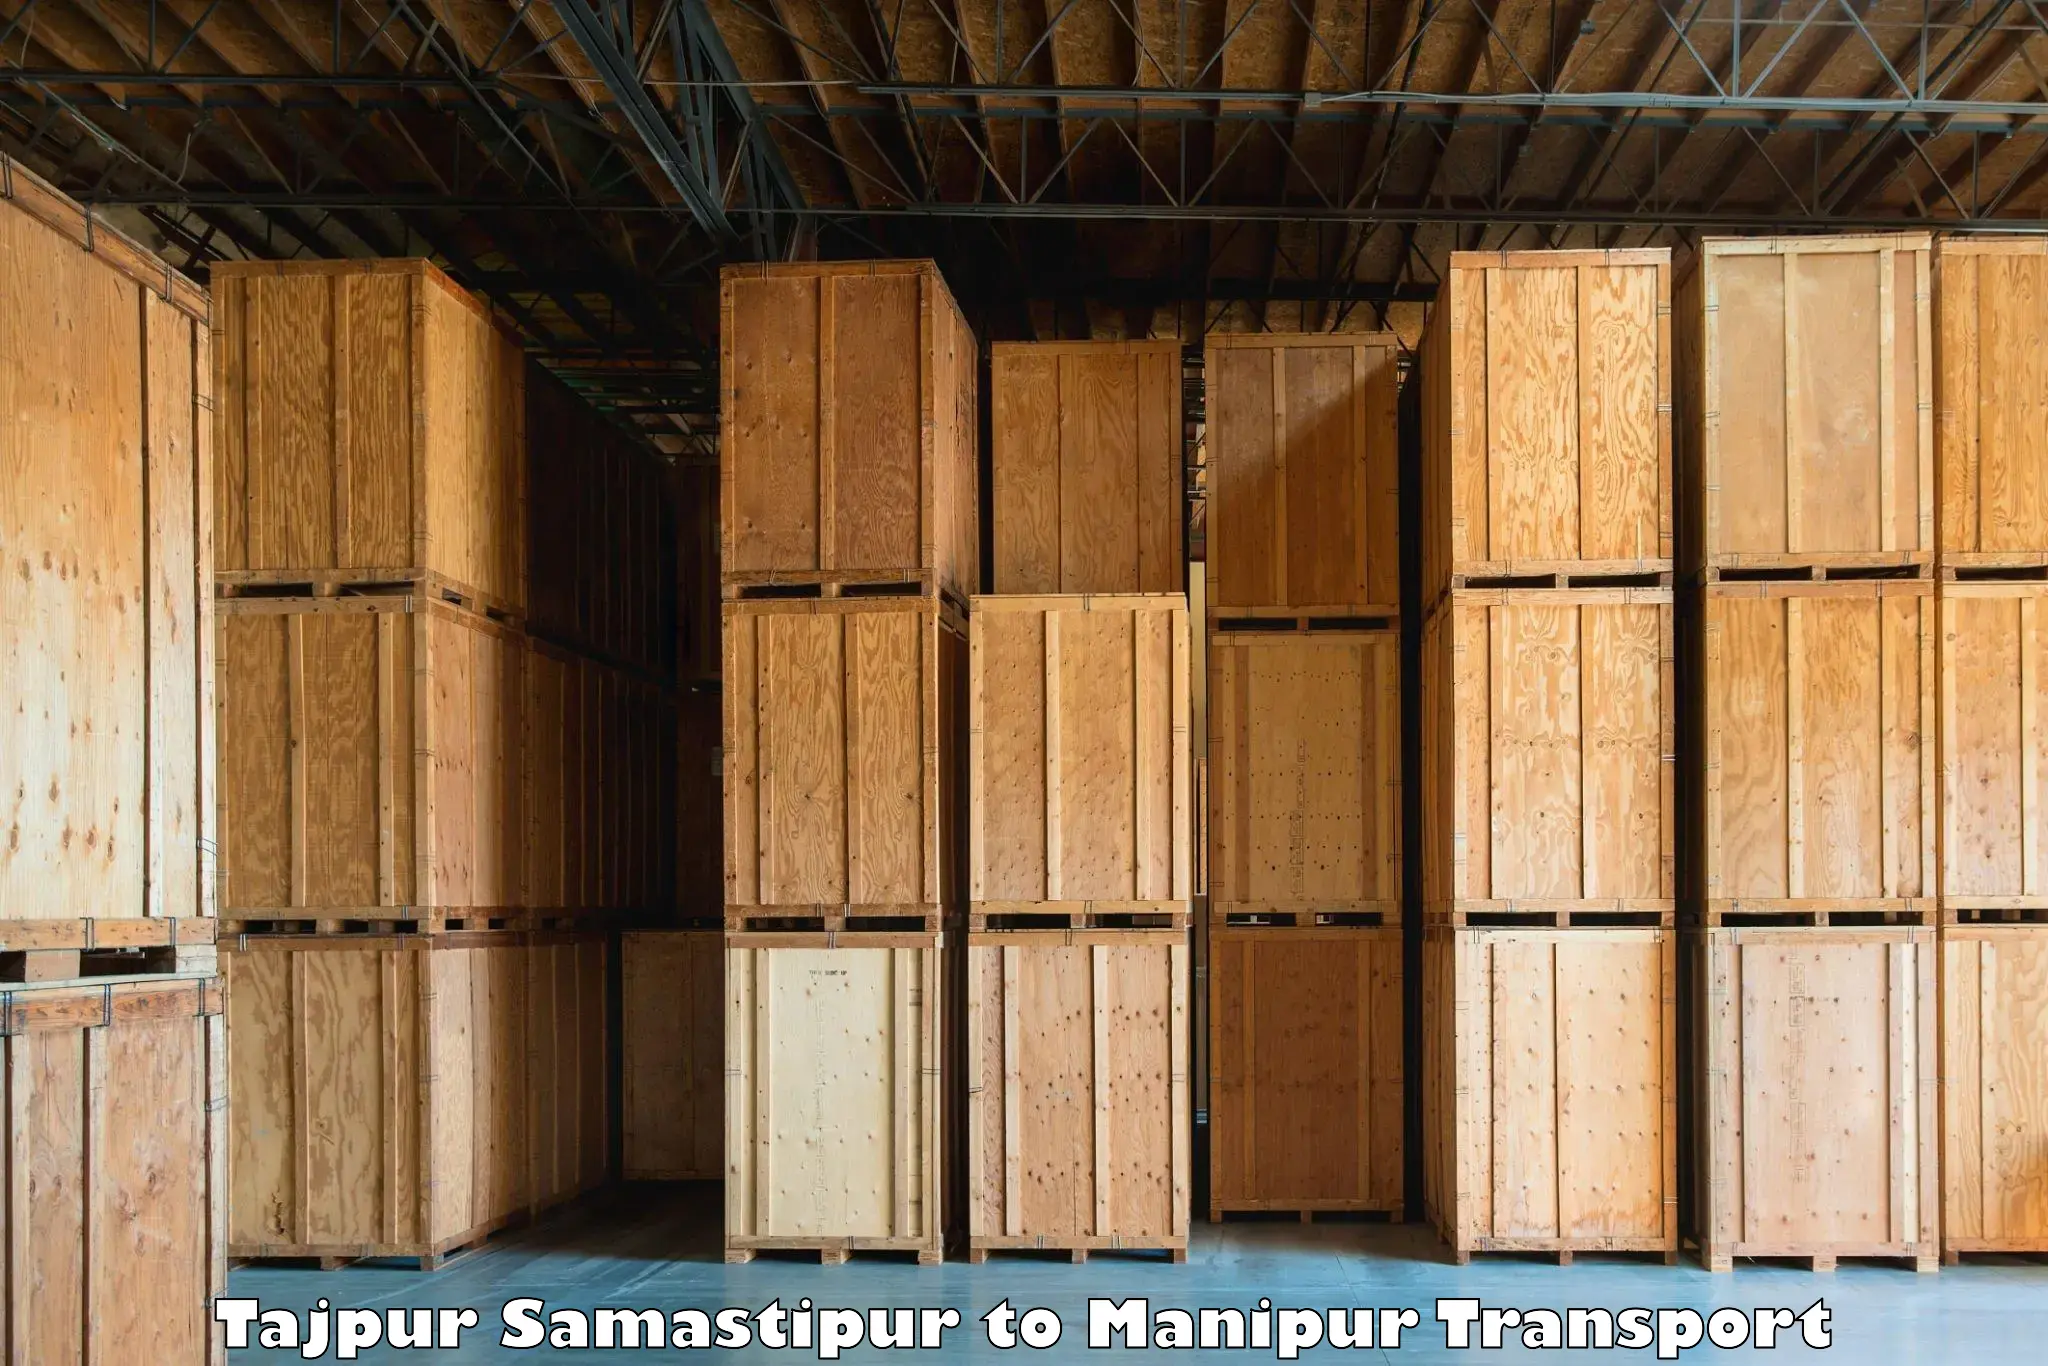 Bike transport service Tajpur Samastipur to Churachandpur